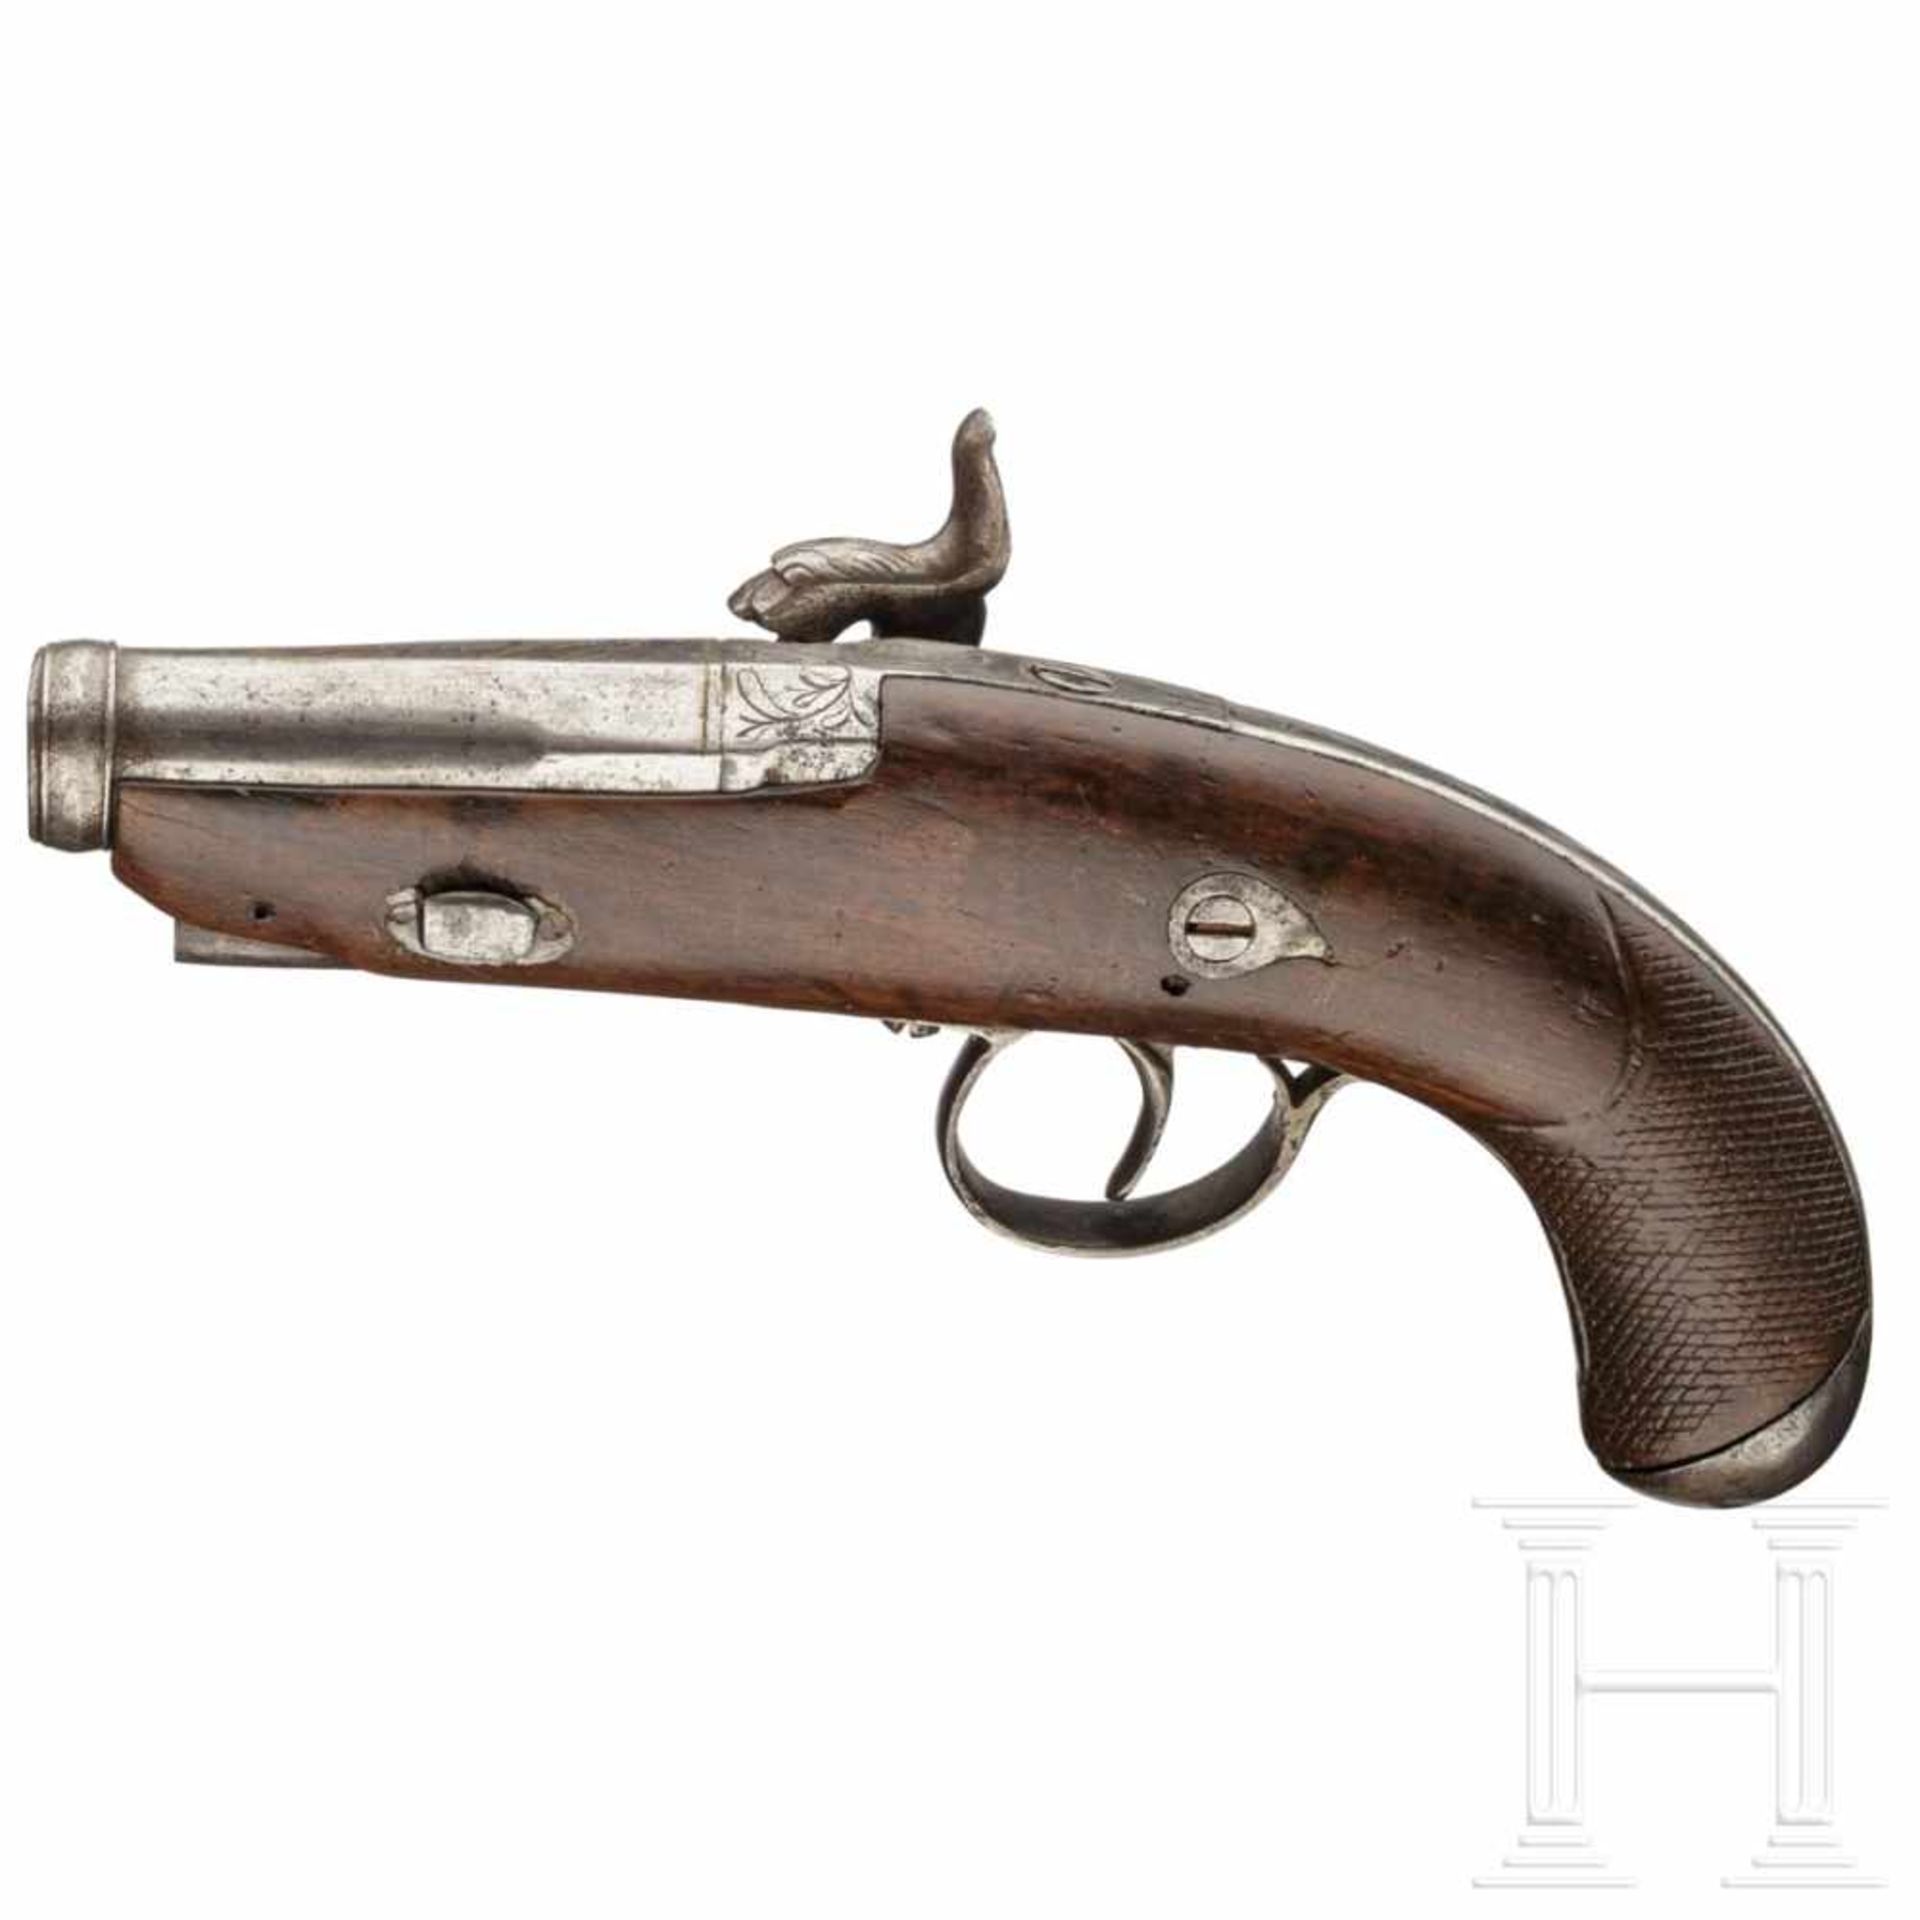 A percussion pistol similar to a Deringer, Eibar, dated 1849Glatter Lauf im Kaliber 15 mm mit - Bild 2 aus 2